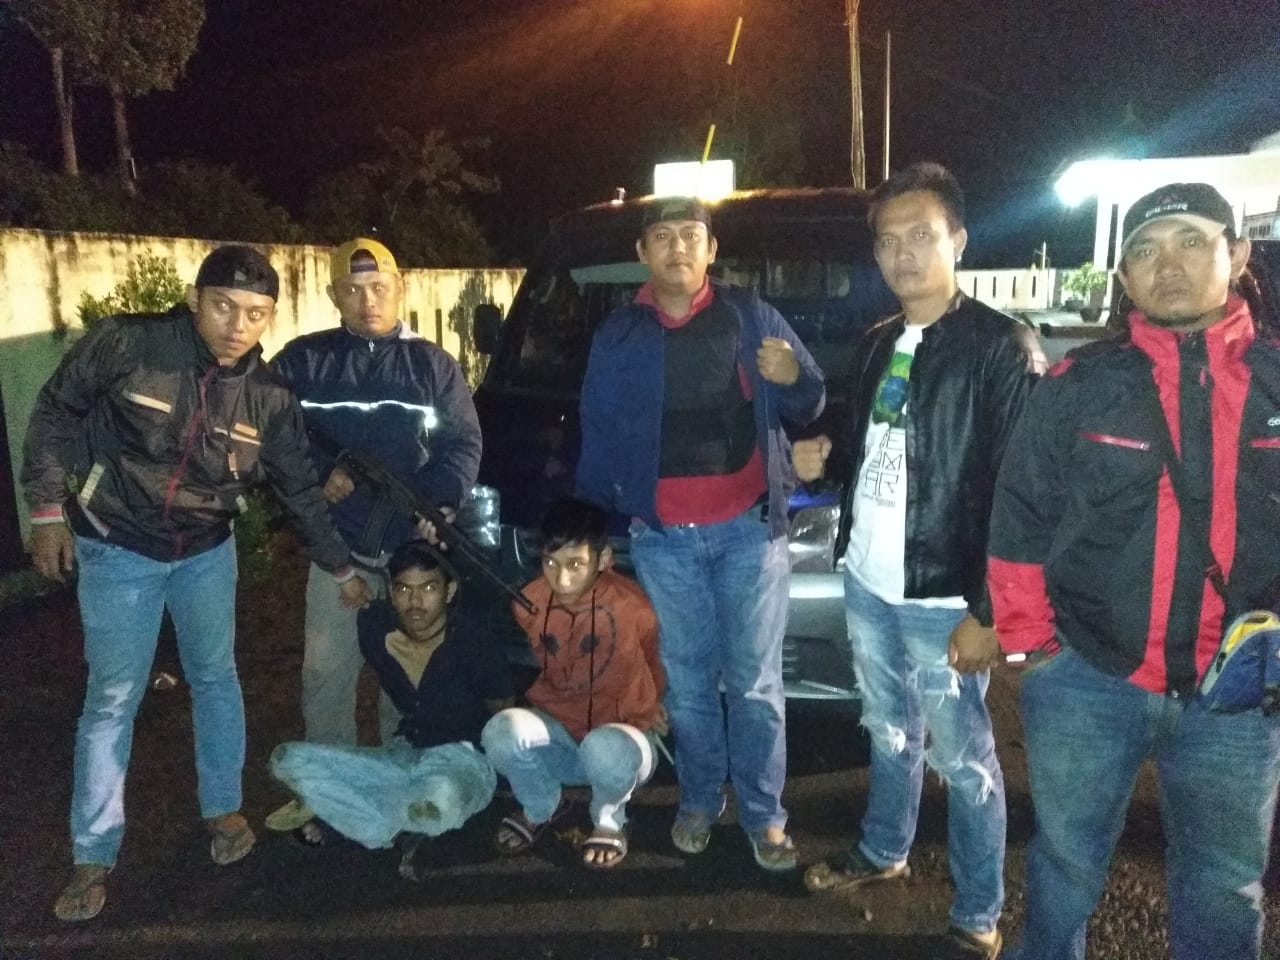 Tim Buser Polres Kepahiang Tangkap Pelaku Pencurian Mobil Lintas Propinsi, Korbannya  Anggota TNI